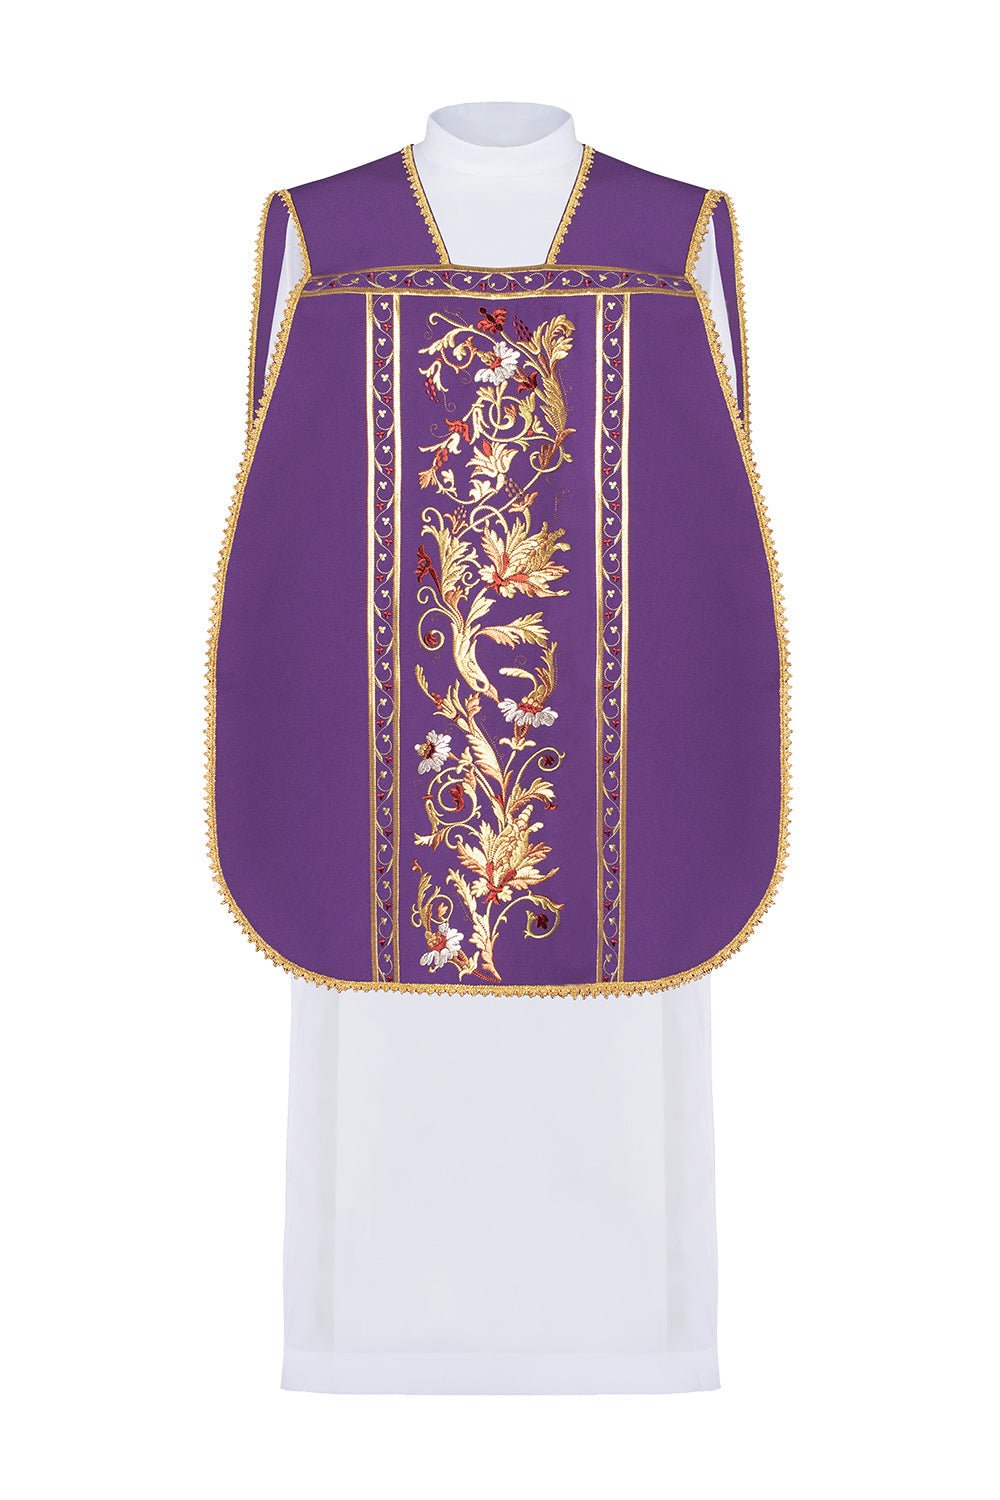 Fioletowy ornat rzymski haftowany z motywem kielicha eucharystycznego